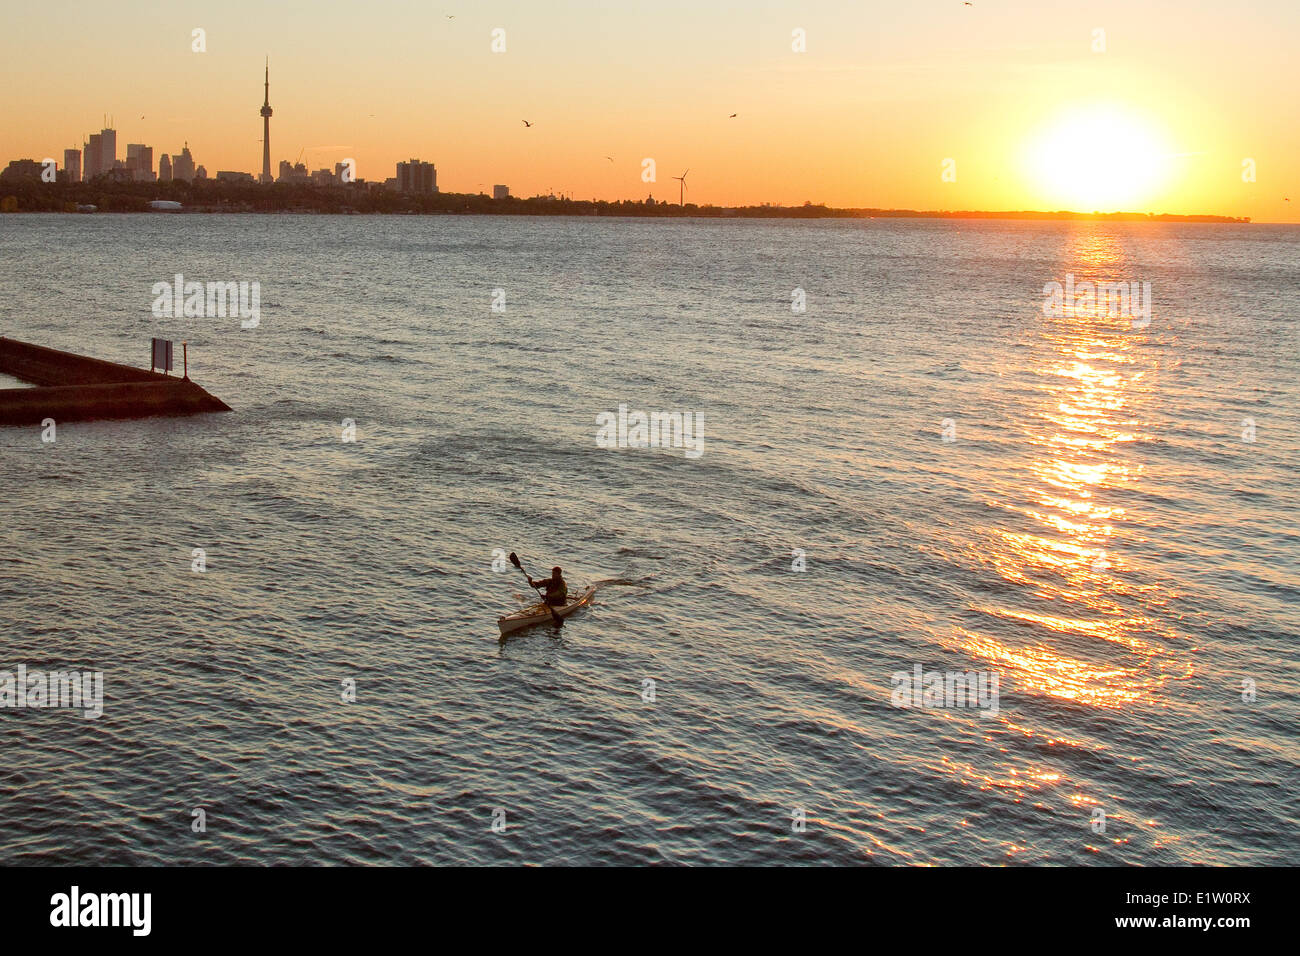 Joven remar kayak en el Lago Ontario en la entrada al Río Humber, Toronto, Ontario, Canadá. Foto de stock